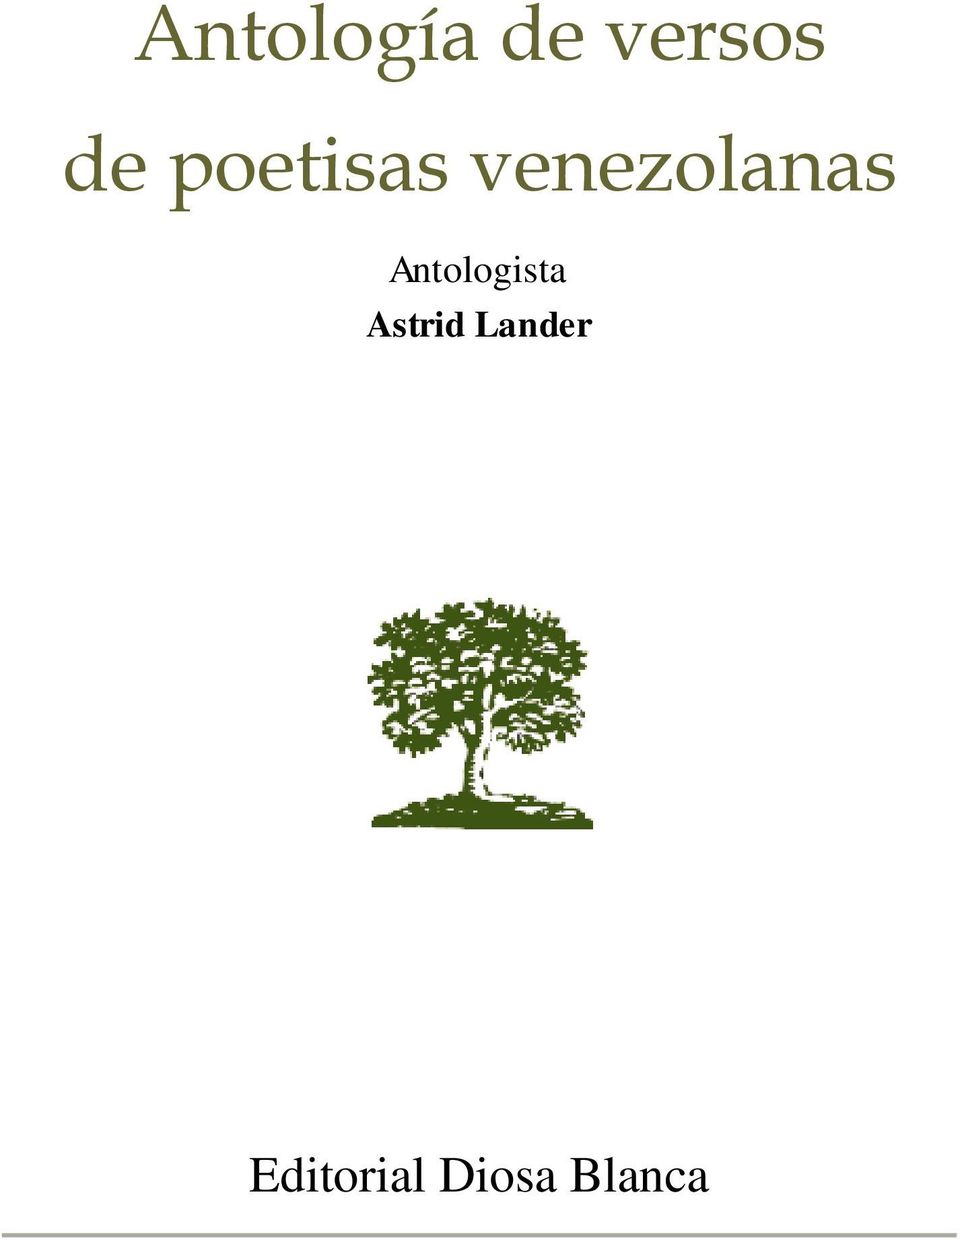 Antología de versos de poetisas venezolanas